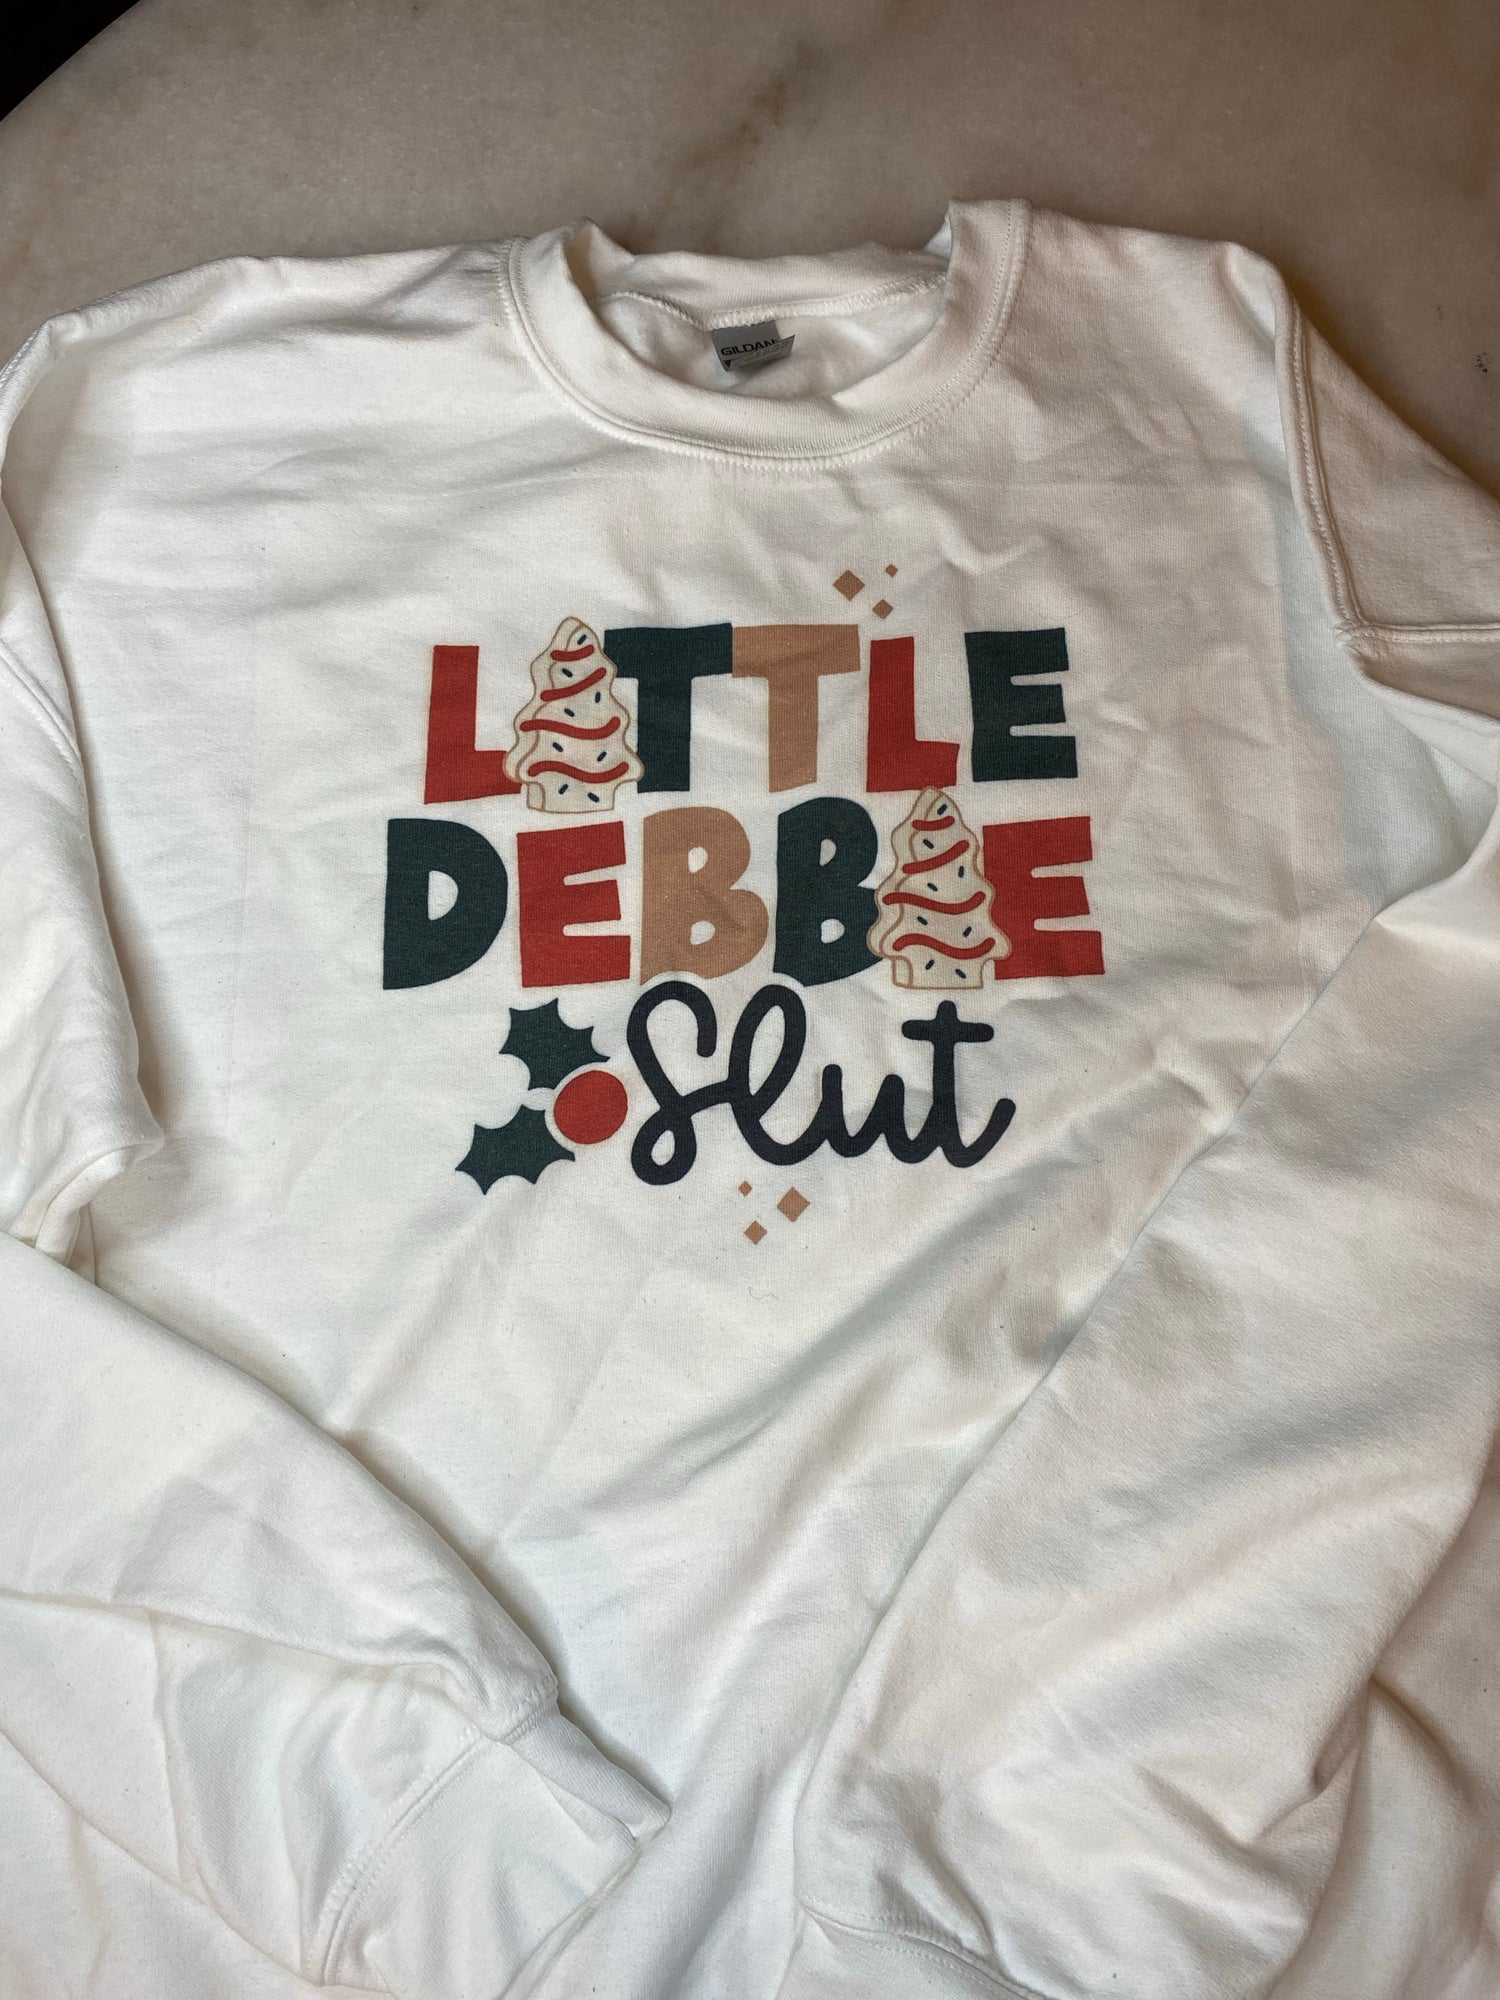 Little Debbie Sl*t - Sweatshirt 2Xl -Defect